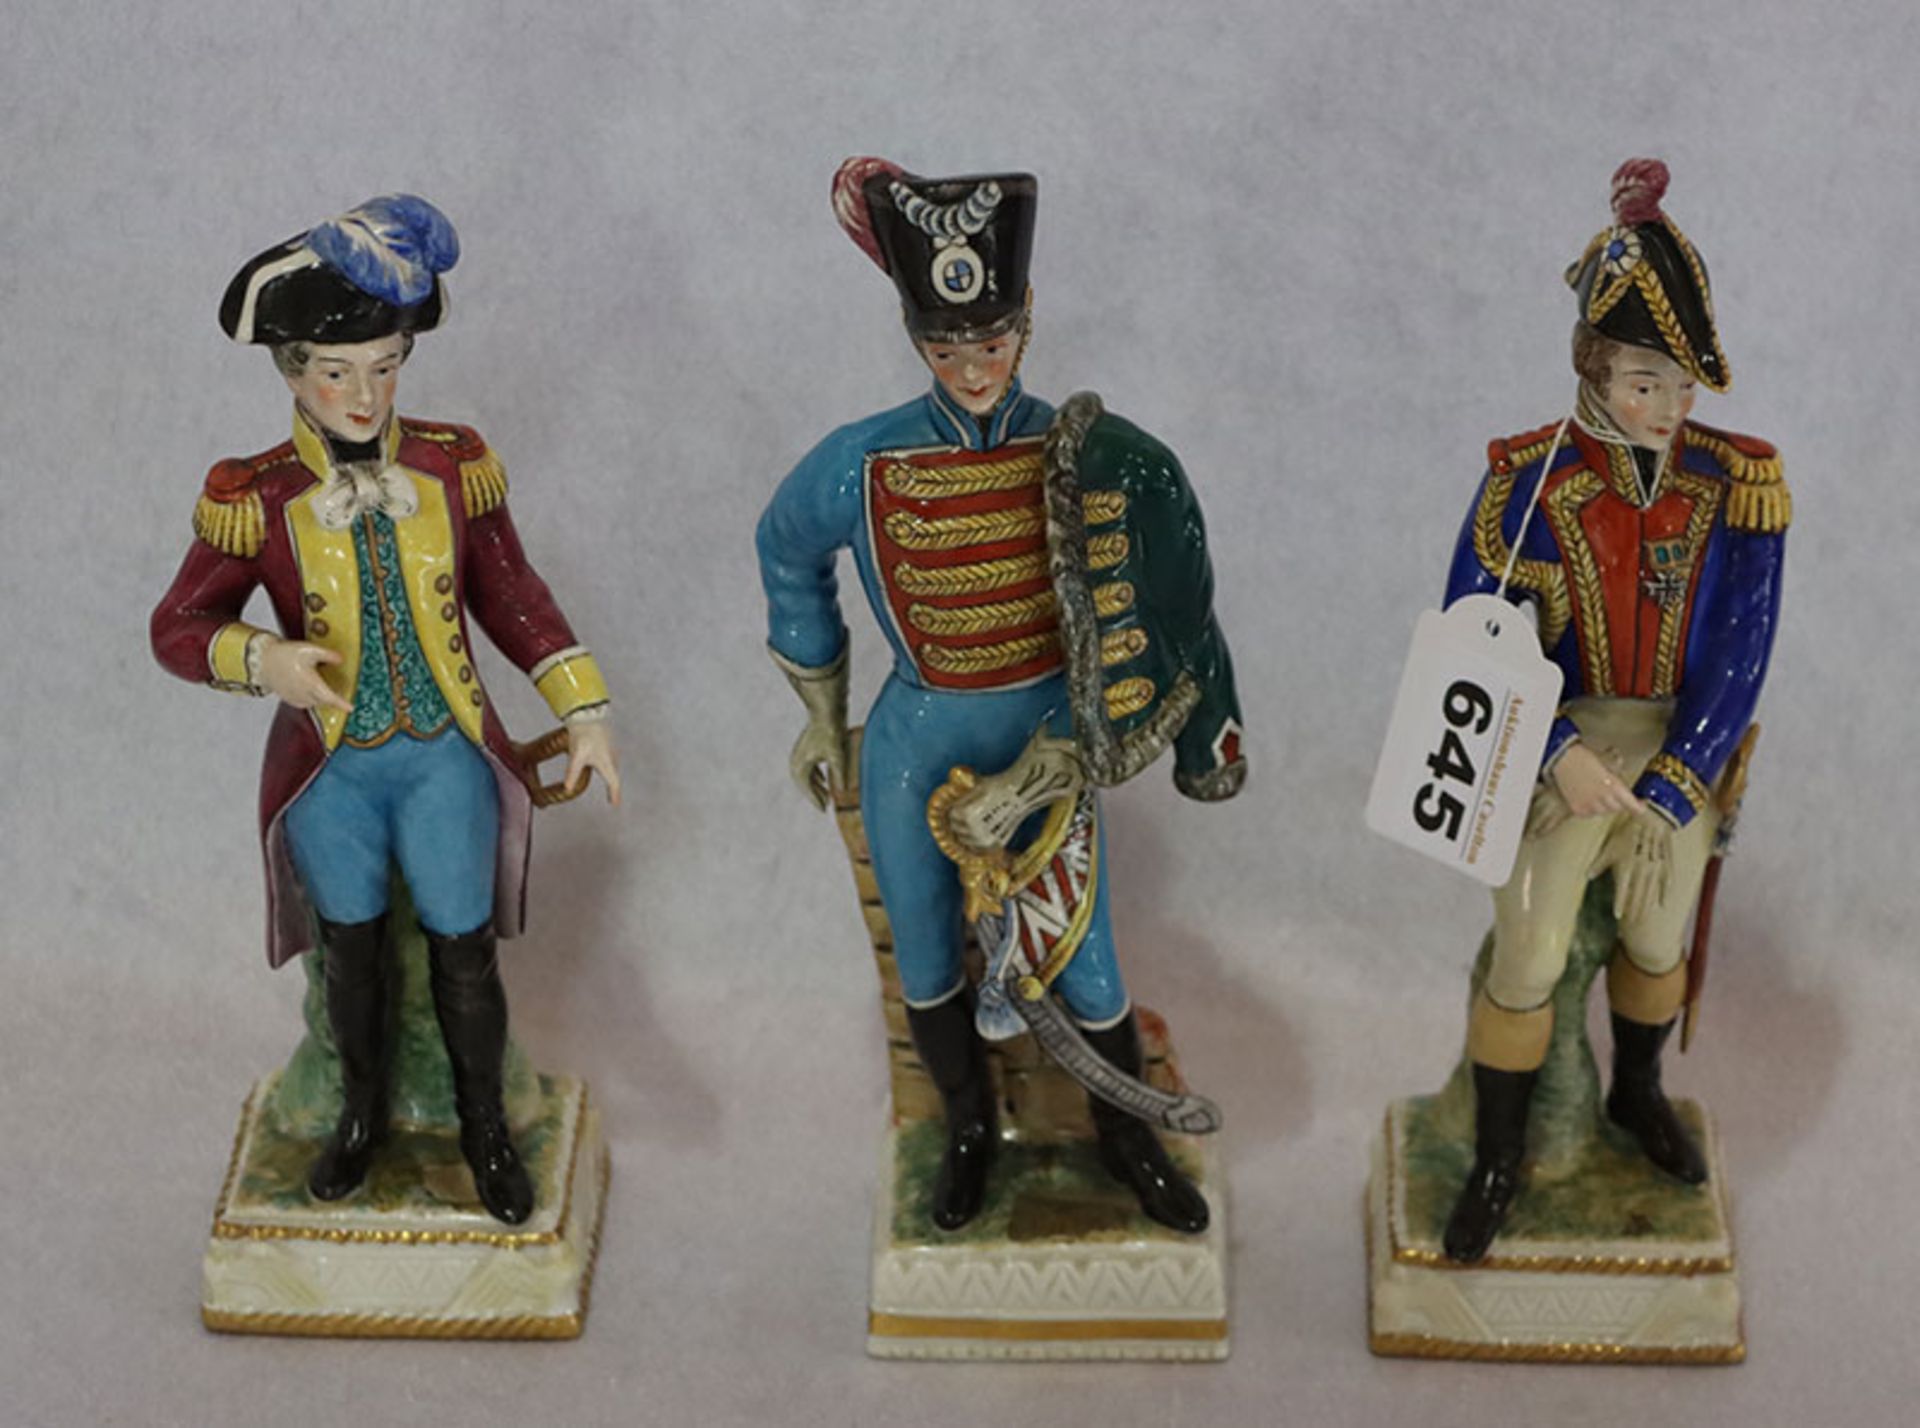 3 Porzellan Figuren der Manufaktur Neapel - Dresden, 'Husar', ' La Fayette' und 'Offizier', farbig